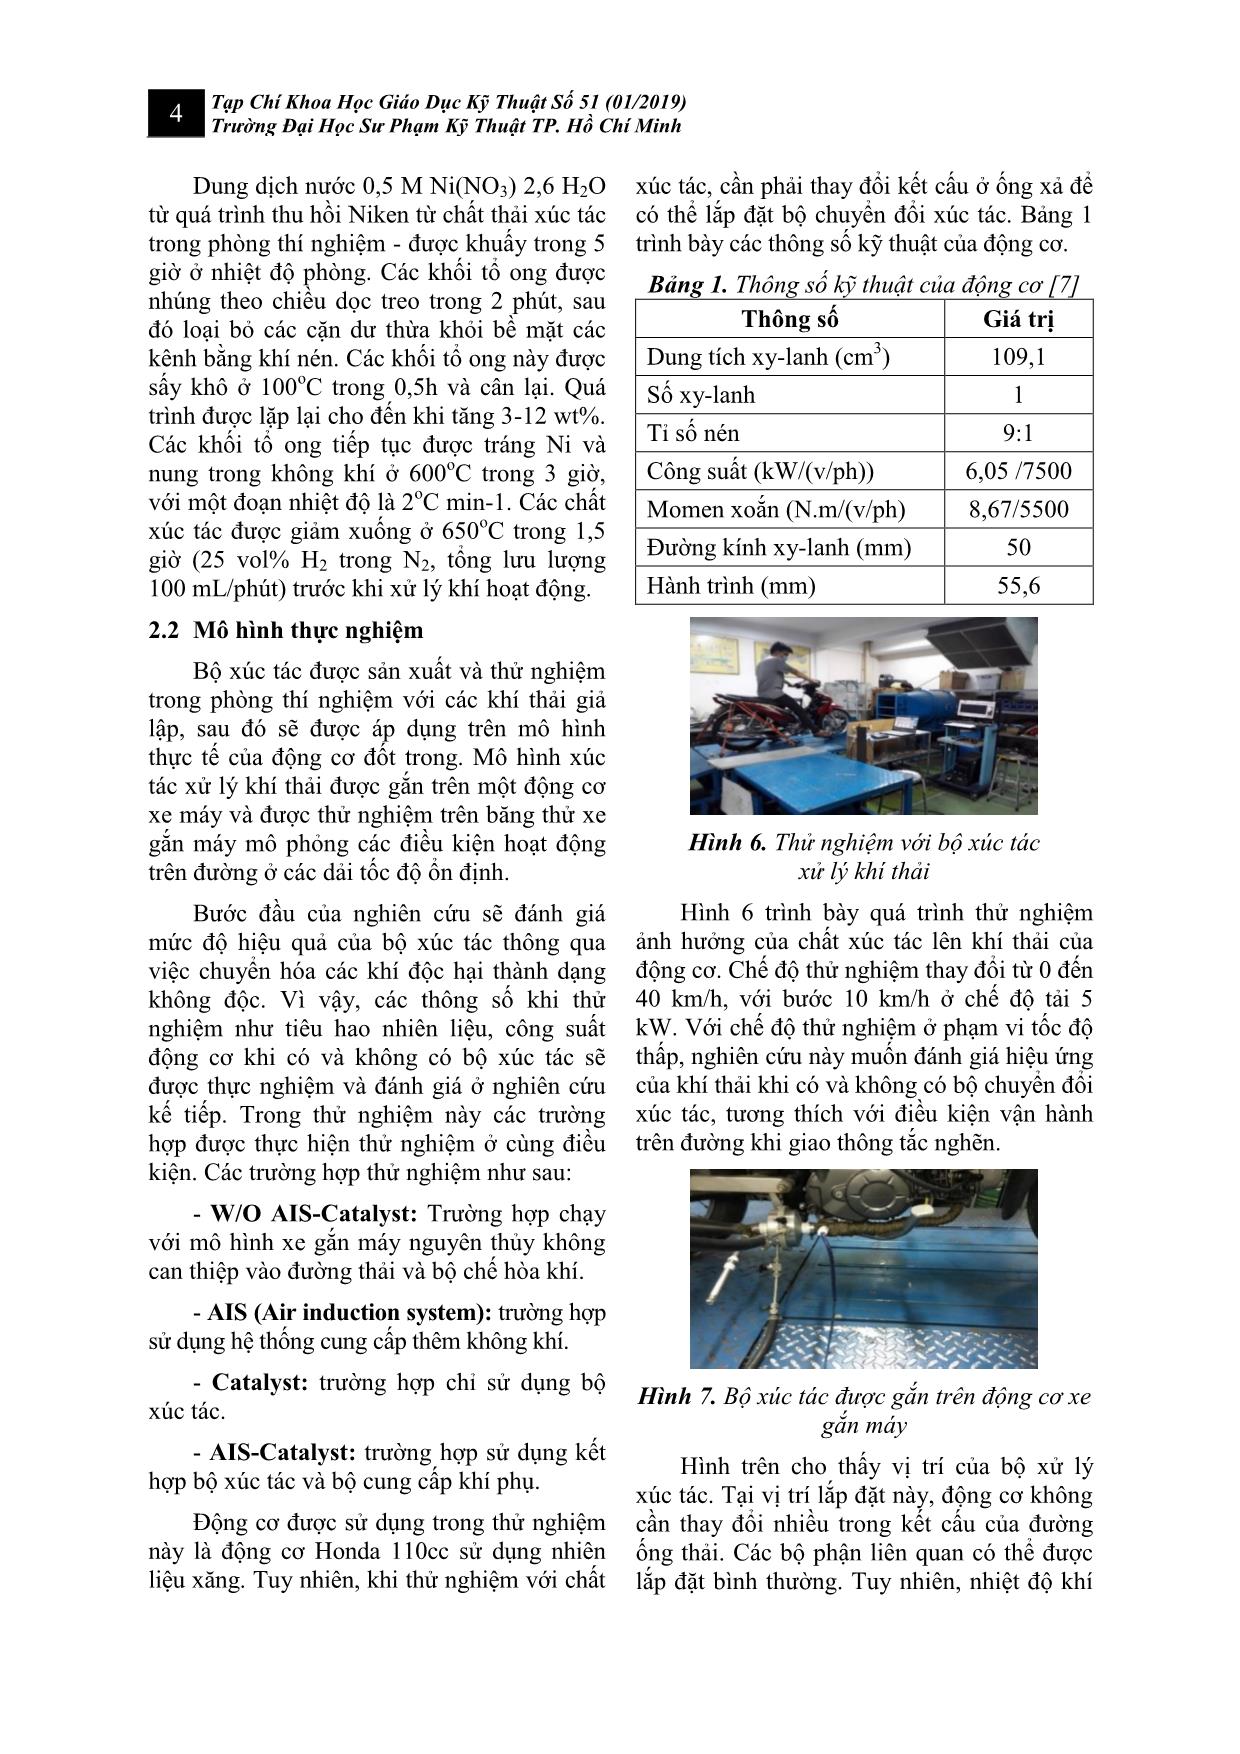 Nghiên cứu bộ xúc tác xử lý khí thải trên động cơ xe gắn máy trang 4